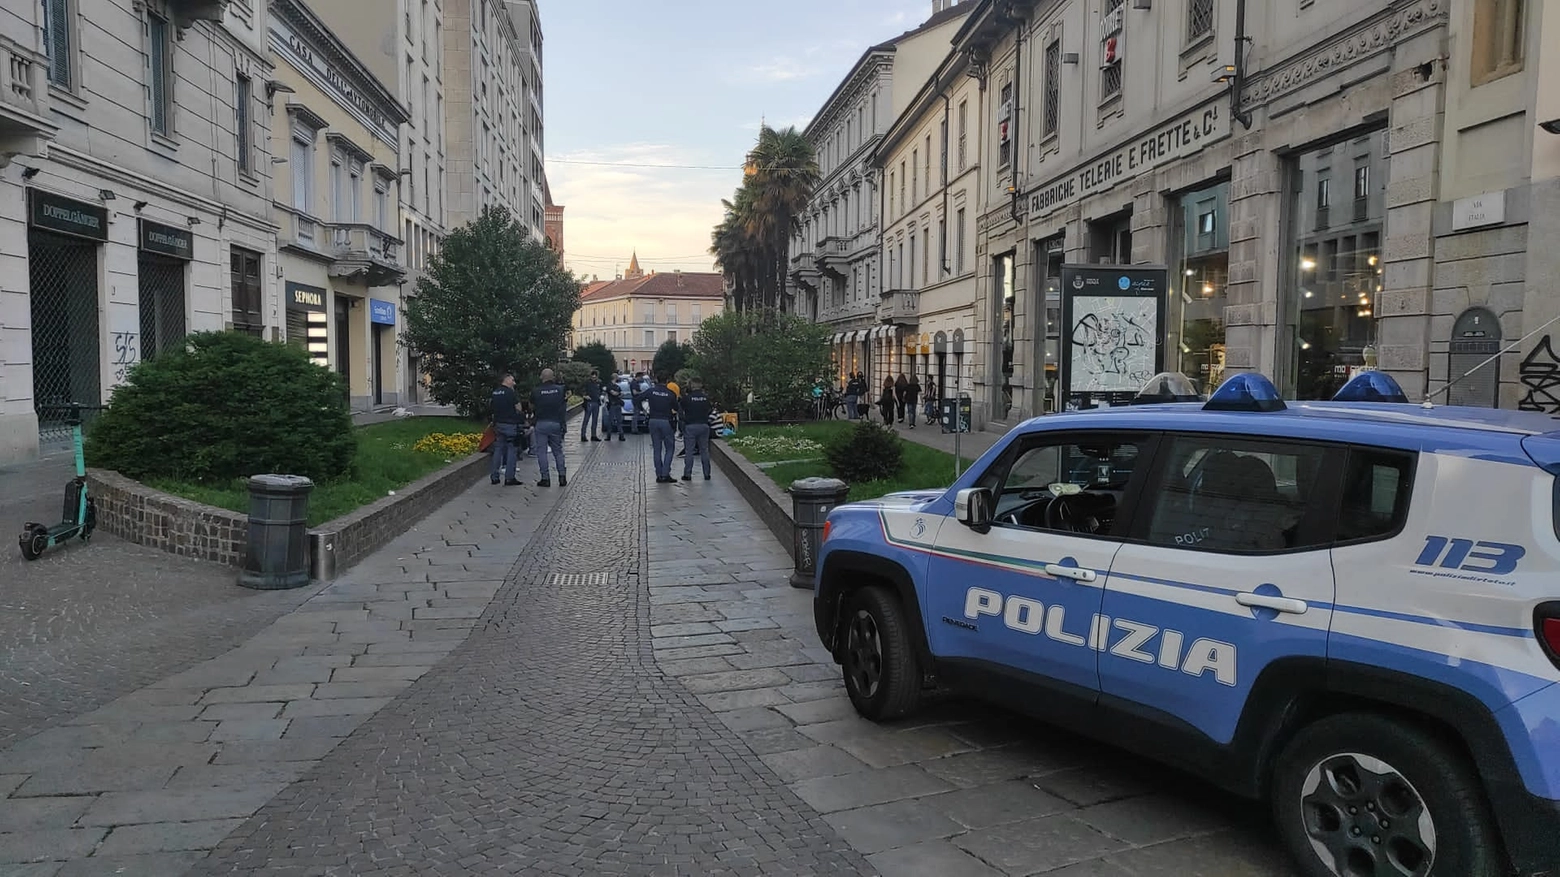 La polizia in centro a Monza